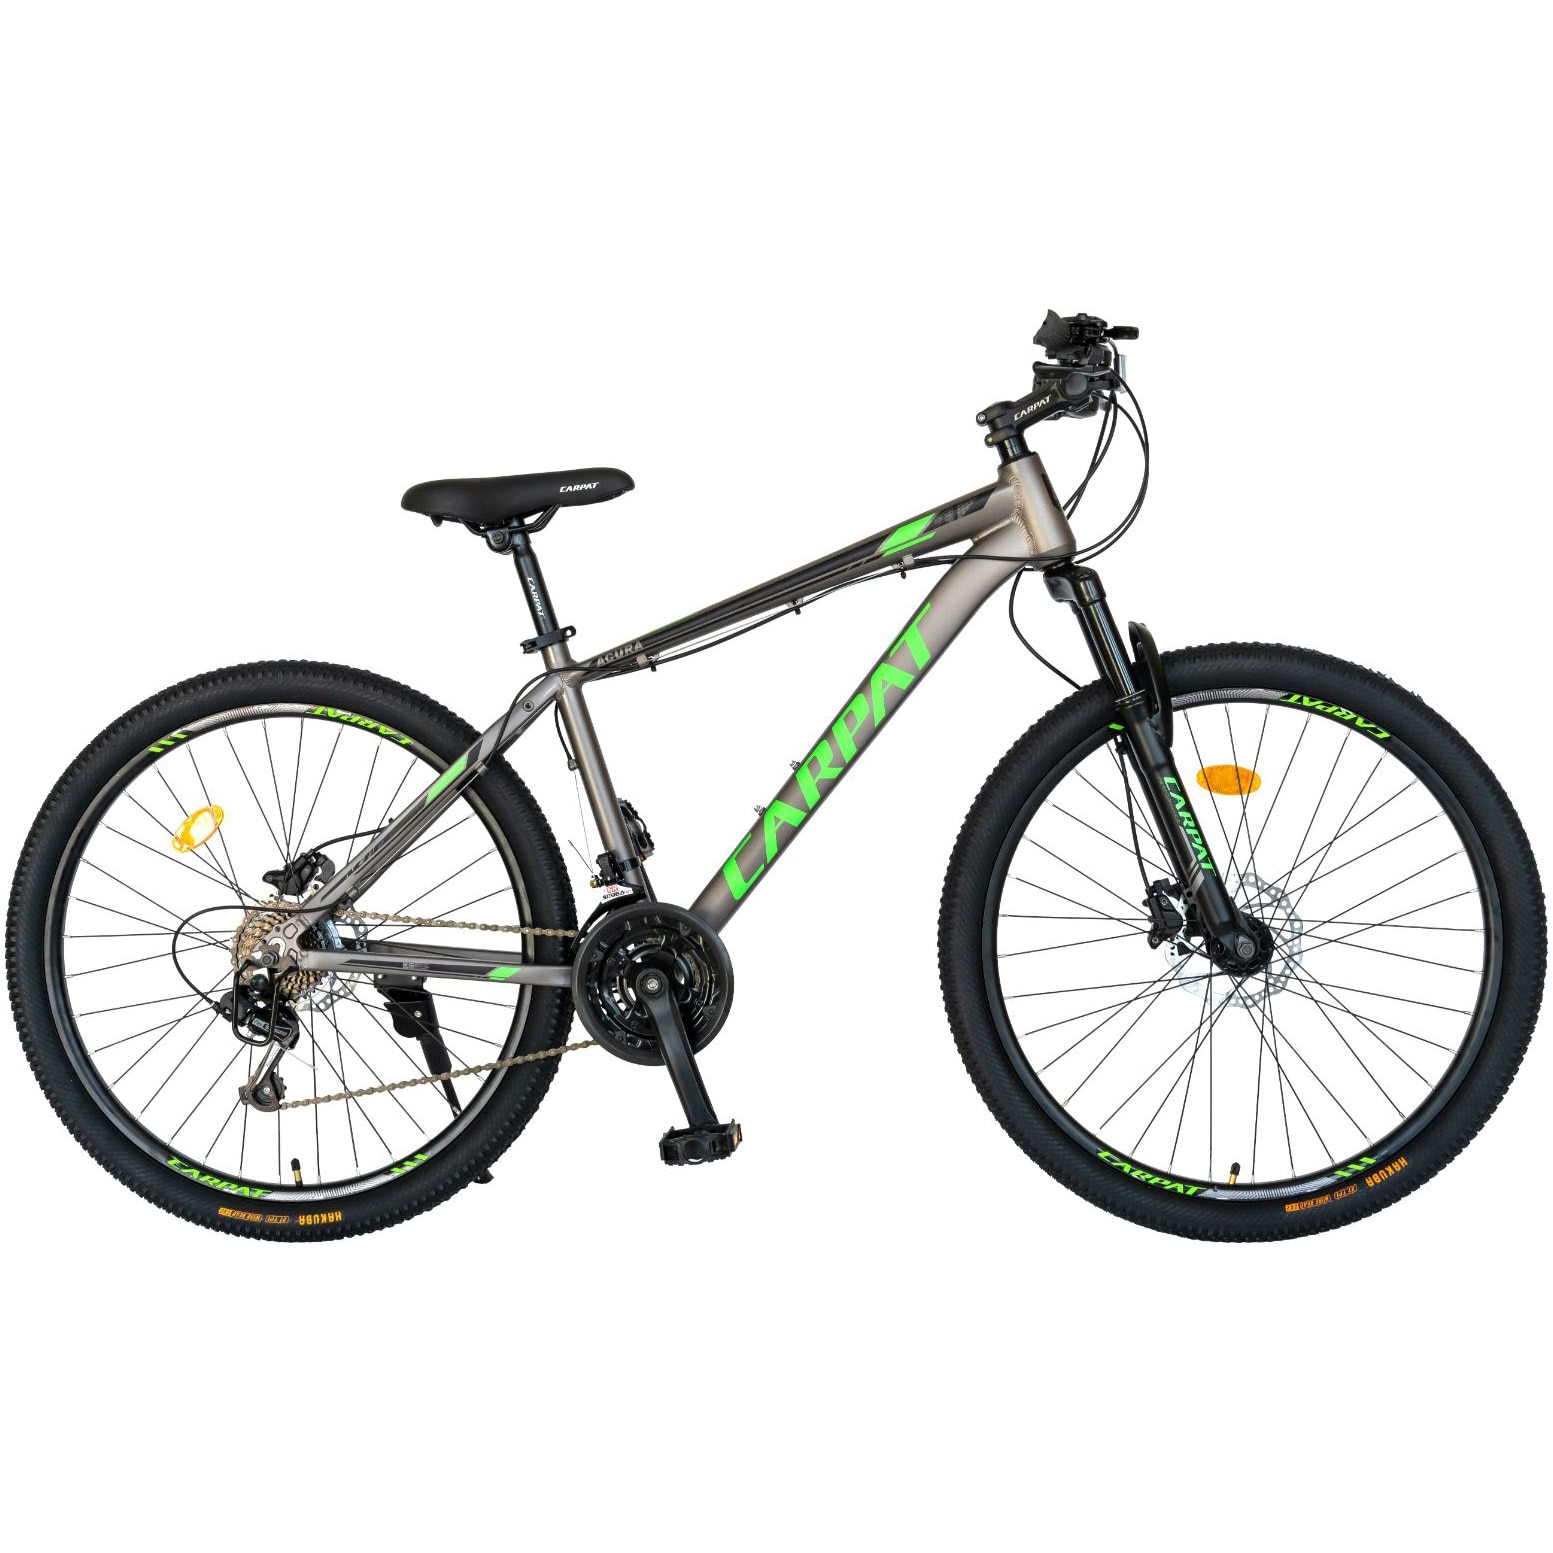 Fotografie Bicicleta MTB-HT Acura, Shimano Tourney TY-21, 21 viteze, Cadru Aluminiu, Roti 29 Inch, Frane Hidraulice, Carpat C2999H, culoare Gri/Negru/Verde